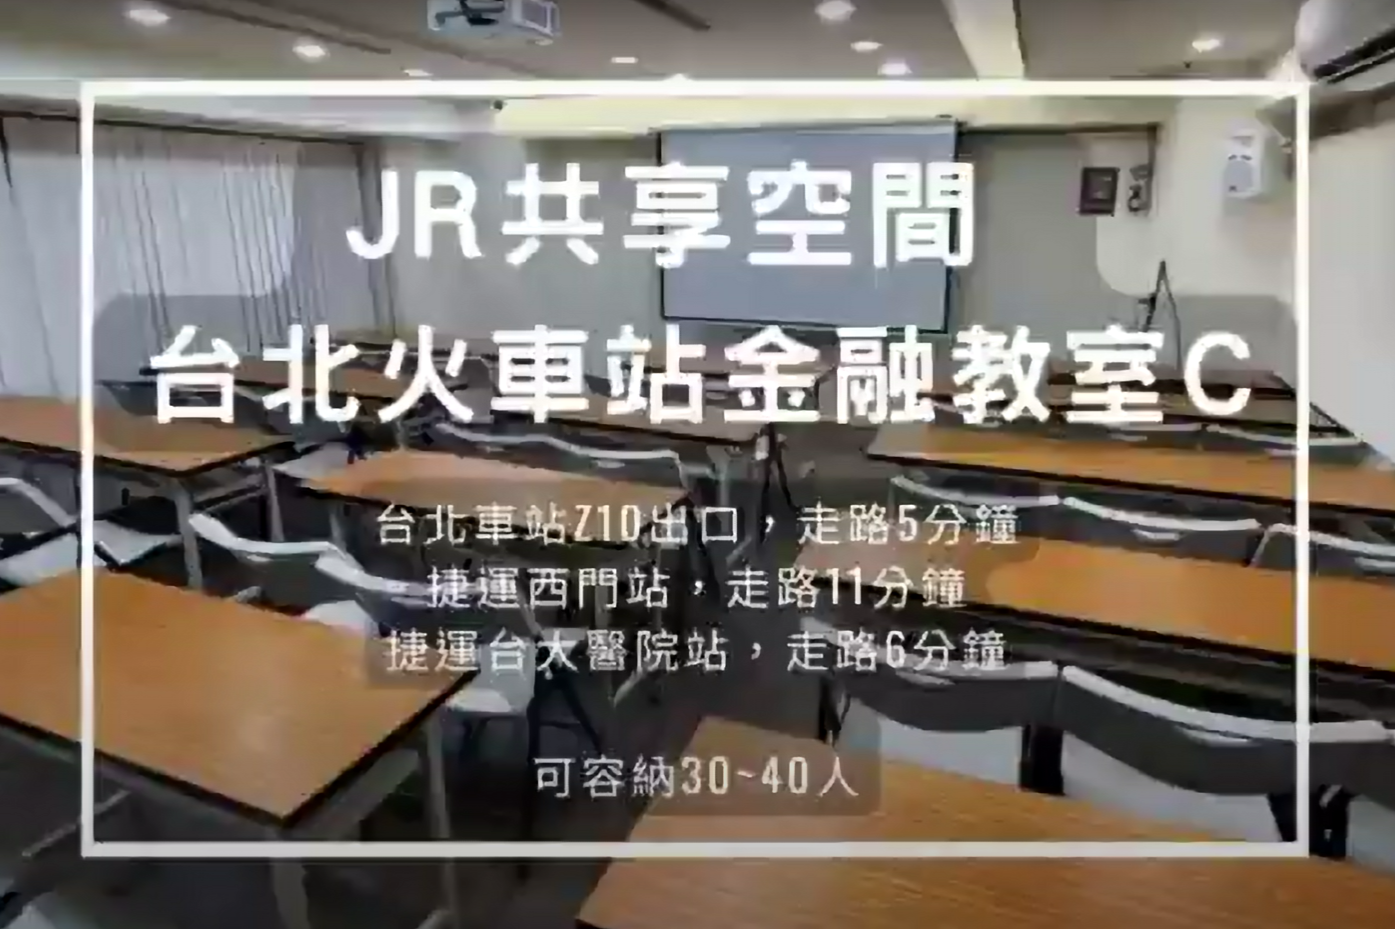 台北火車站場地租借-金融教室c教室-影片縮圖